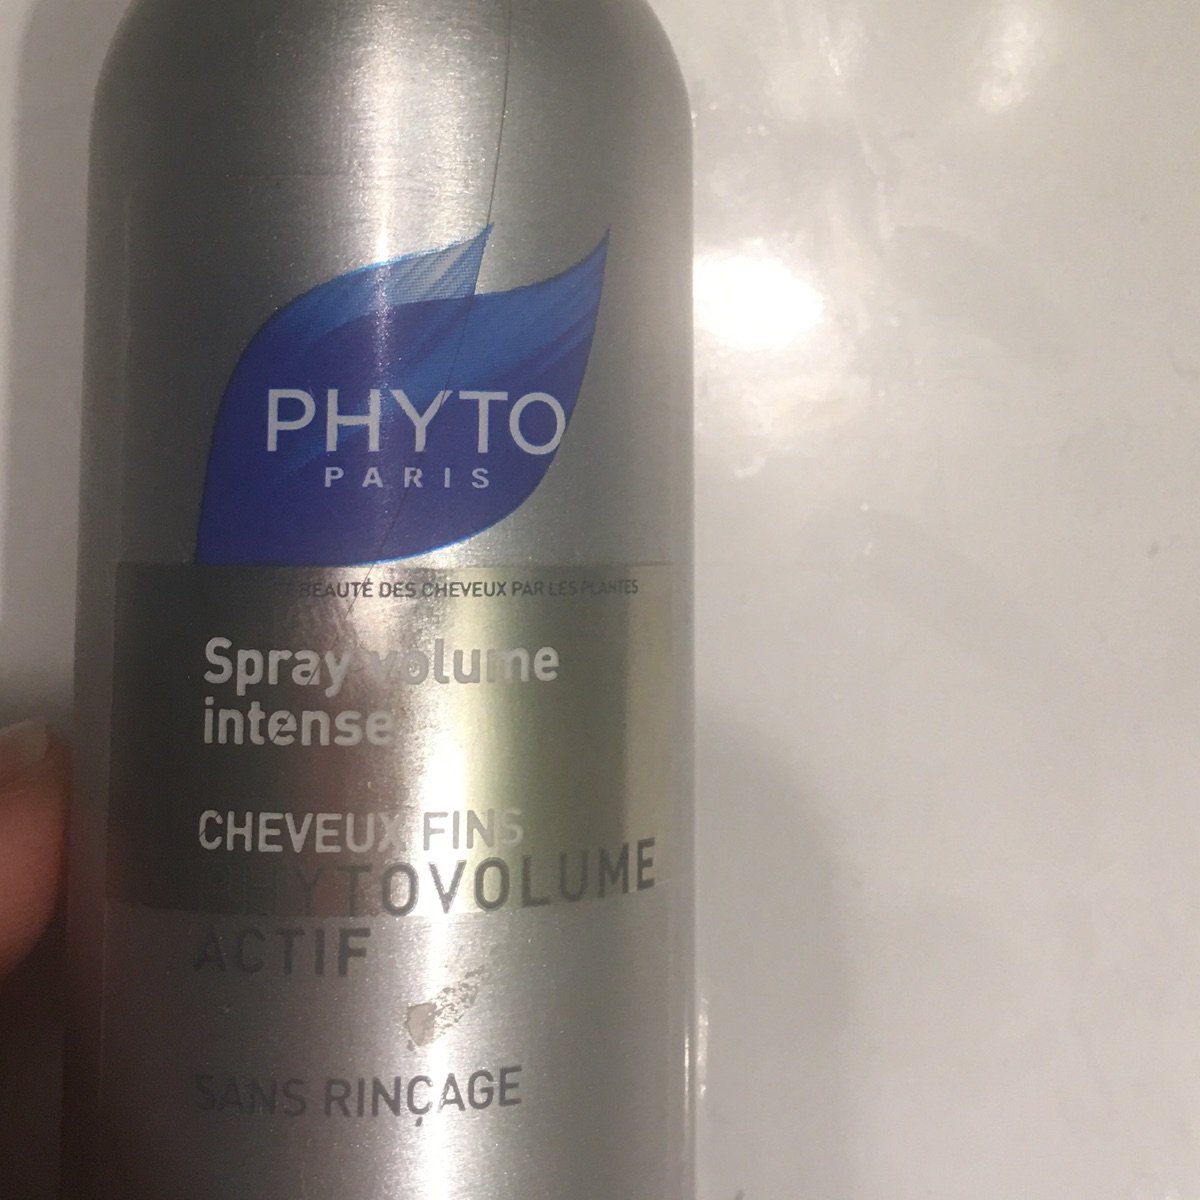 Recensioni su Spray volume intense di Phyto | abillion